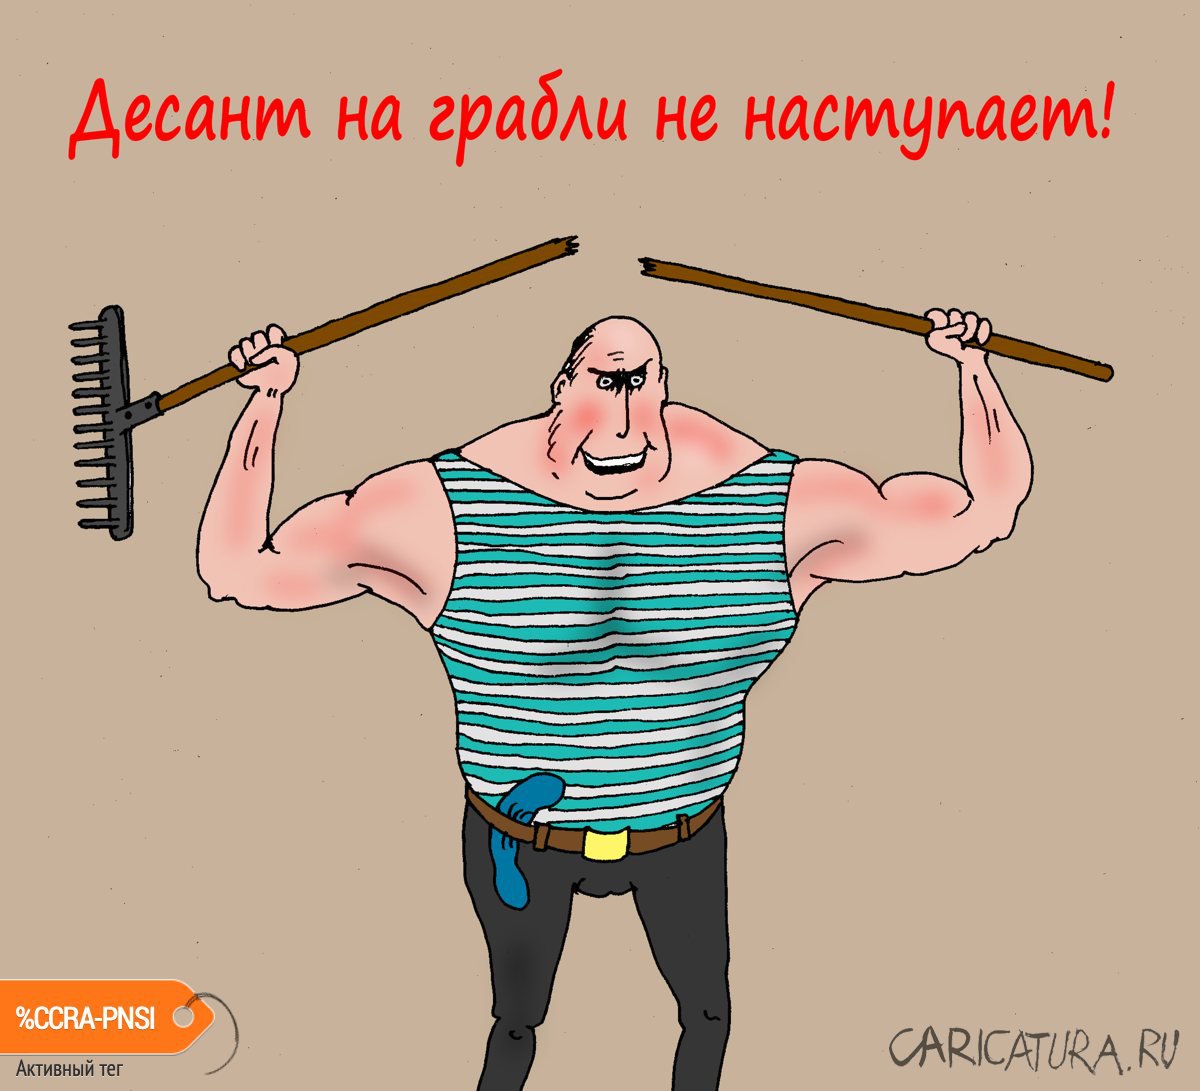 Карикатура "Товарищ сержант", Валерий Тарасенко